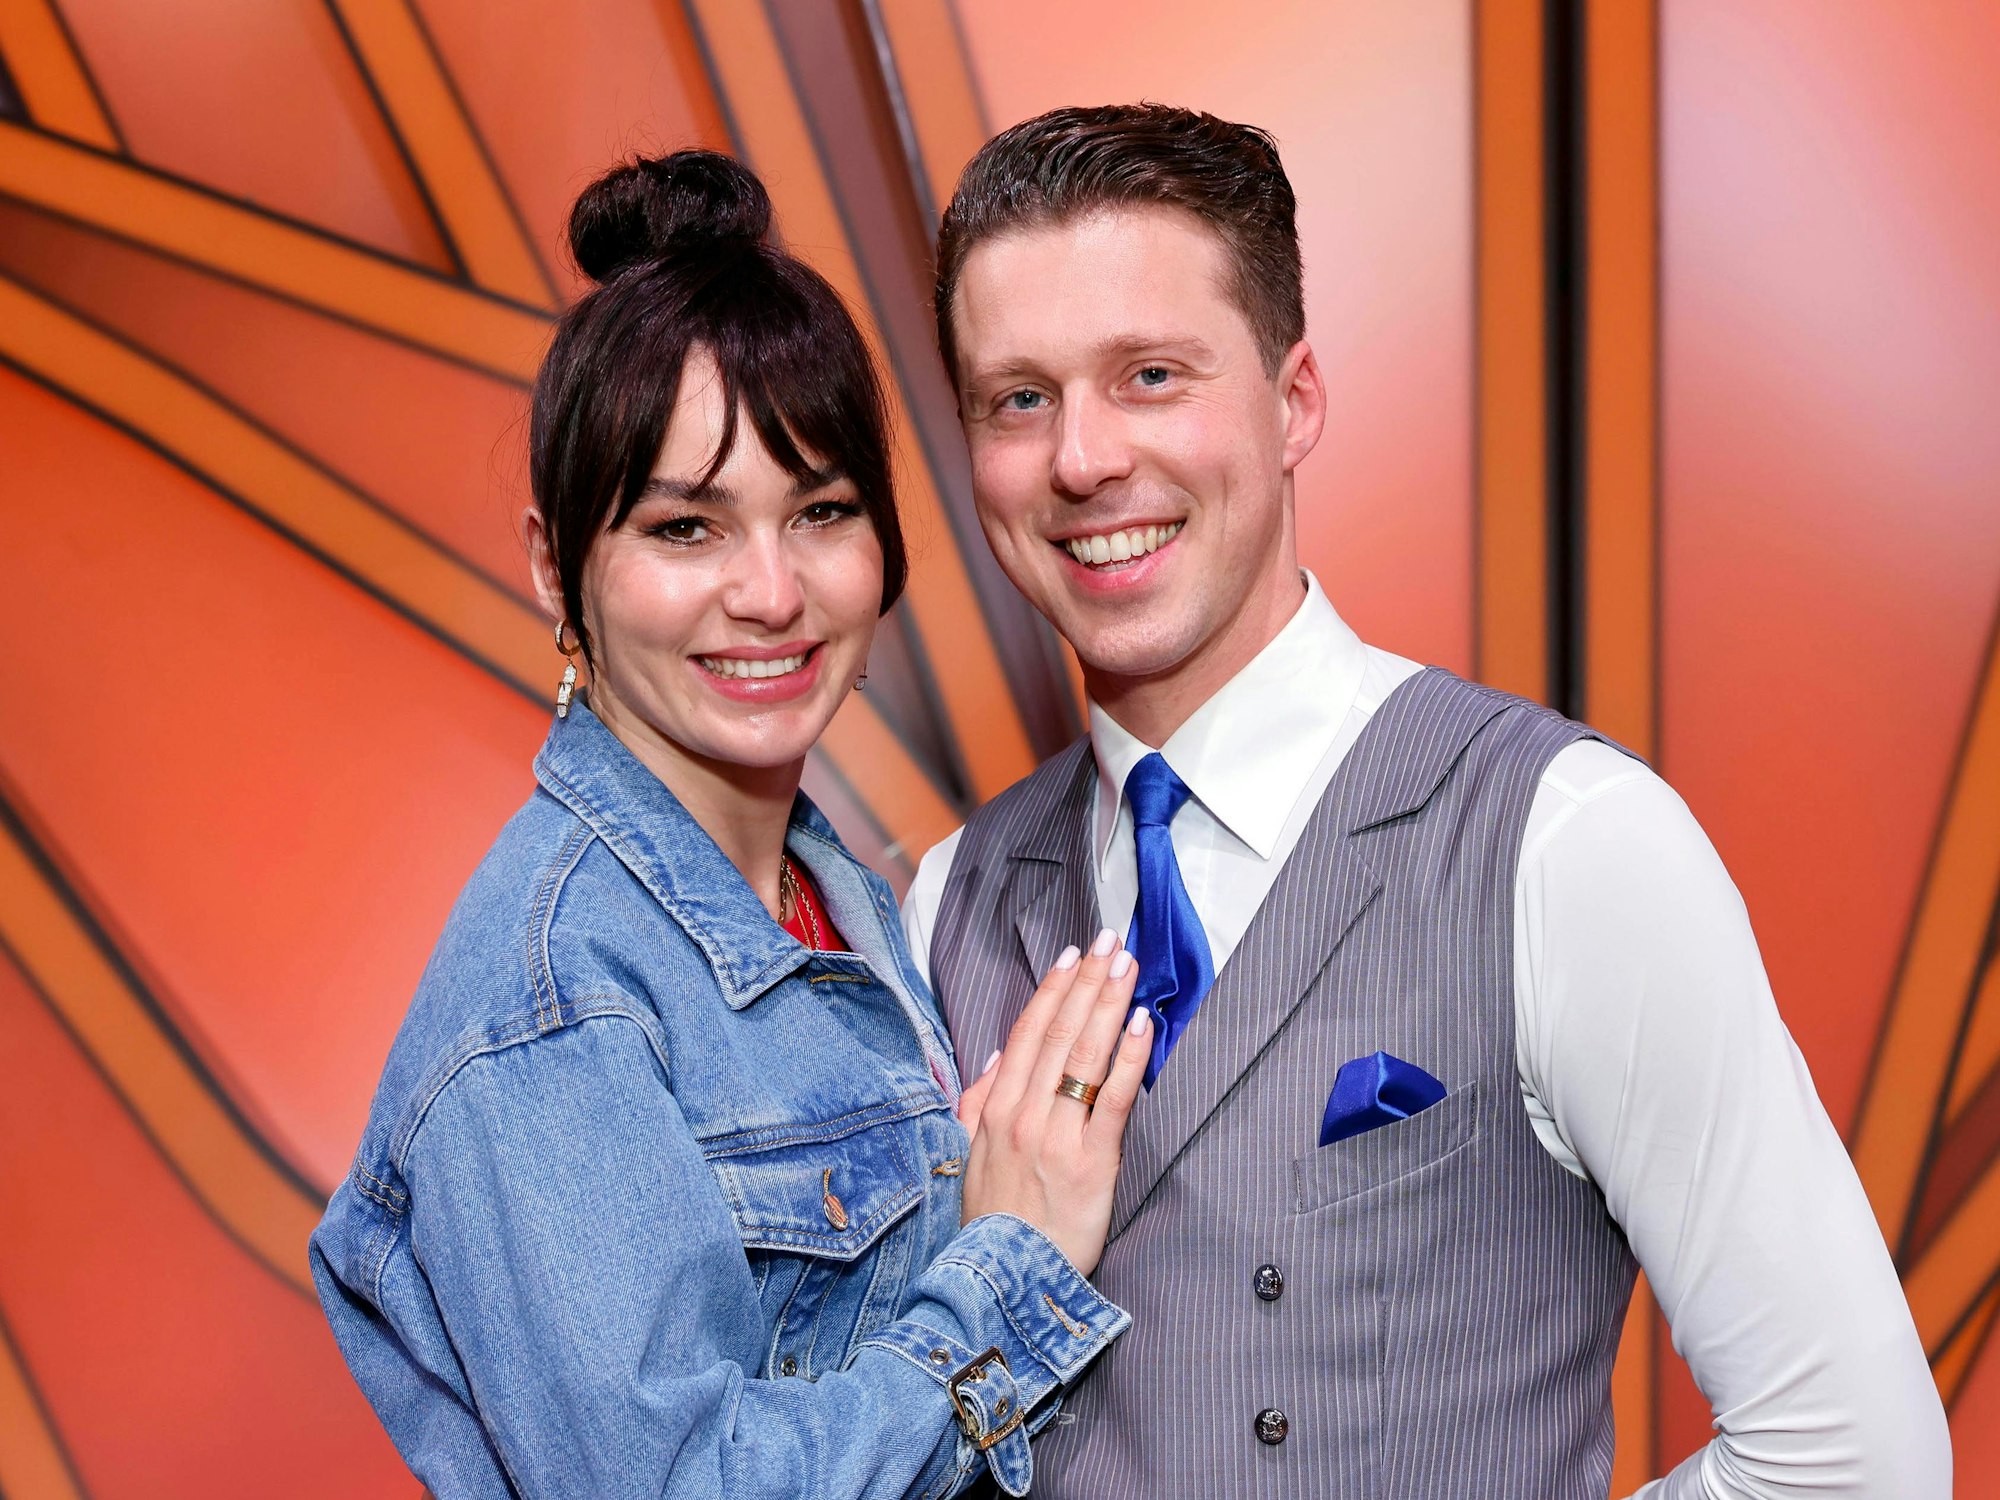 Profitänzerin Renata Lusin mit ihrem Ehemann und Profitänzer Valentin Lusin bei der 16. Staffel der RTL-Tanzshow Let s Dance im MMC Coloneum.